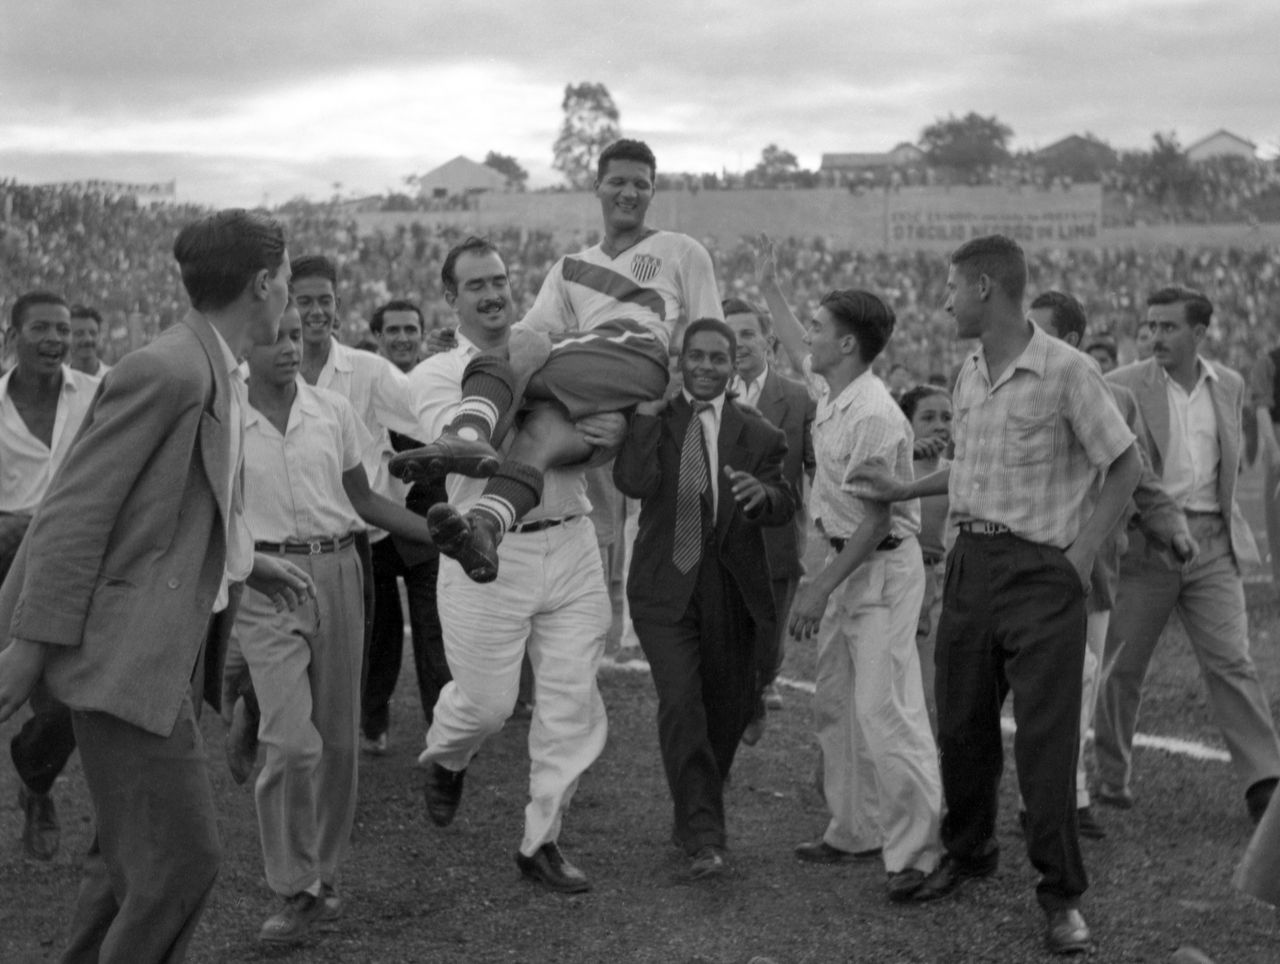 Ο σέντερ φορ των ΗΠΑ Τζόι Γκάτζενς στους ώμους των φιλάθλων μετά την νίκη επί της Αγγλίας με 1-0 στο Στάδιο Ιντεπεντένσια του Μπέλο Οριζόντε της Βραζιλίας, στις 28 Ιουνίου 1950.